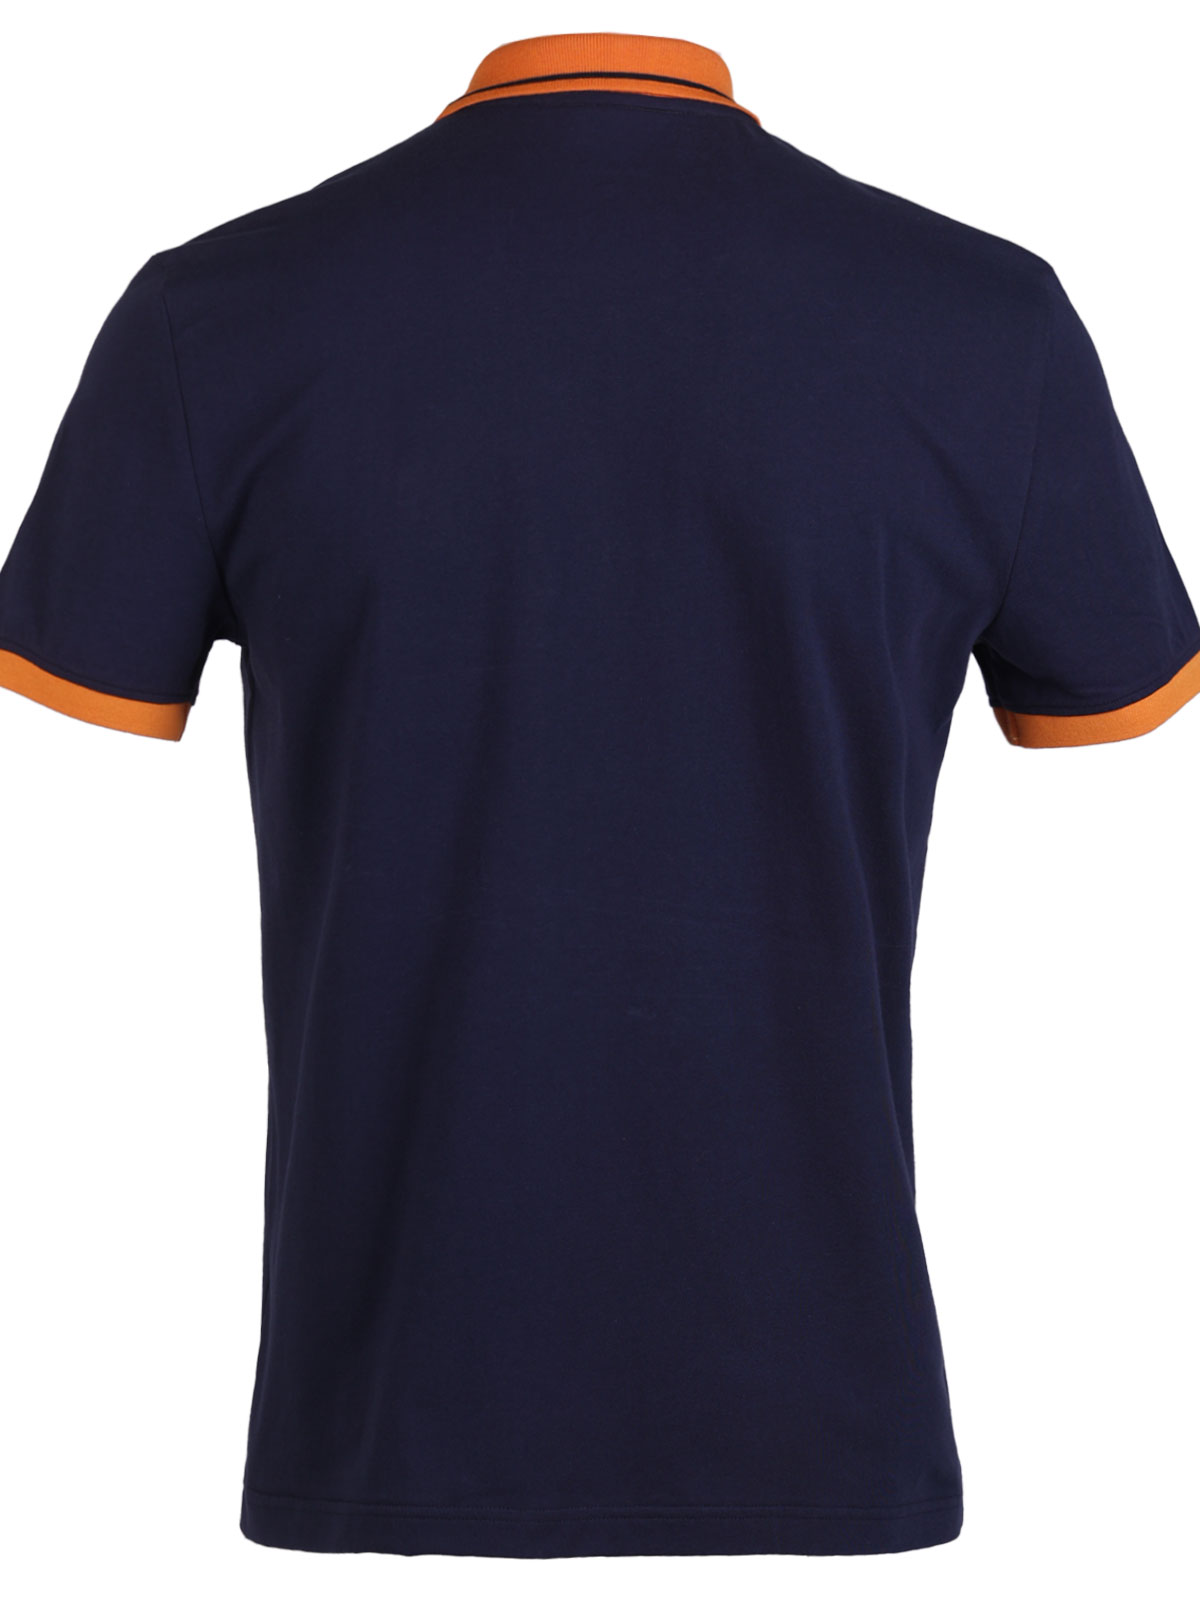 Тениска с оранжева и бяла лента - 94407 66.00 лв img2